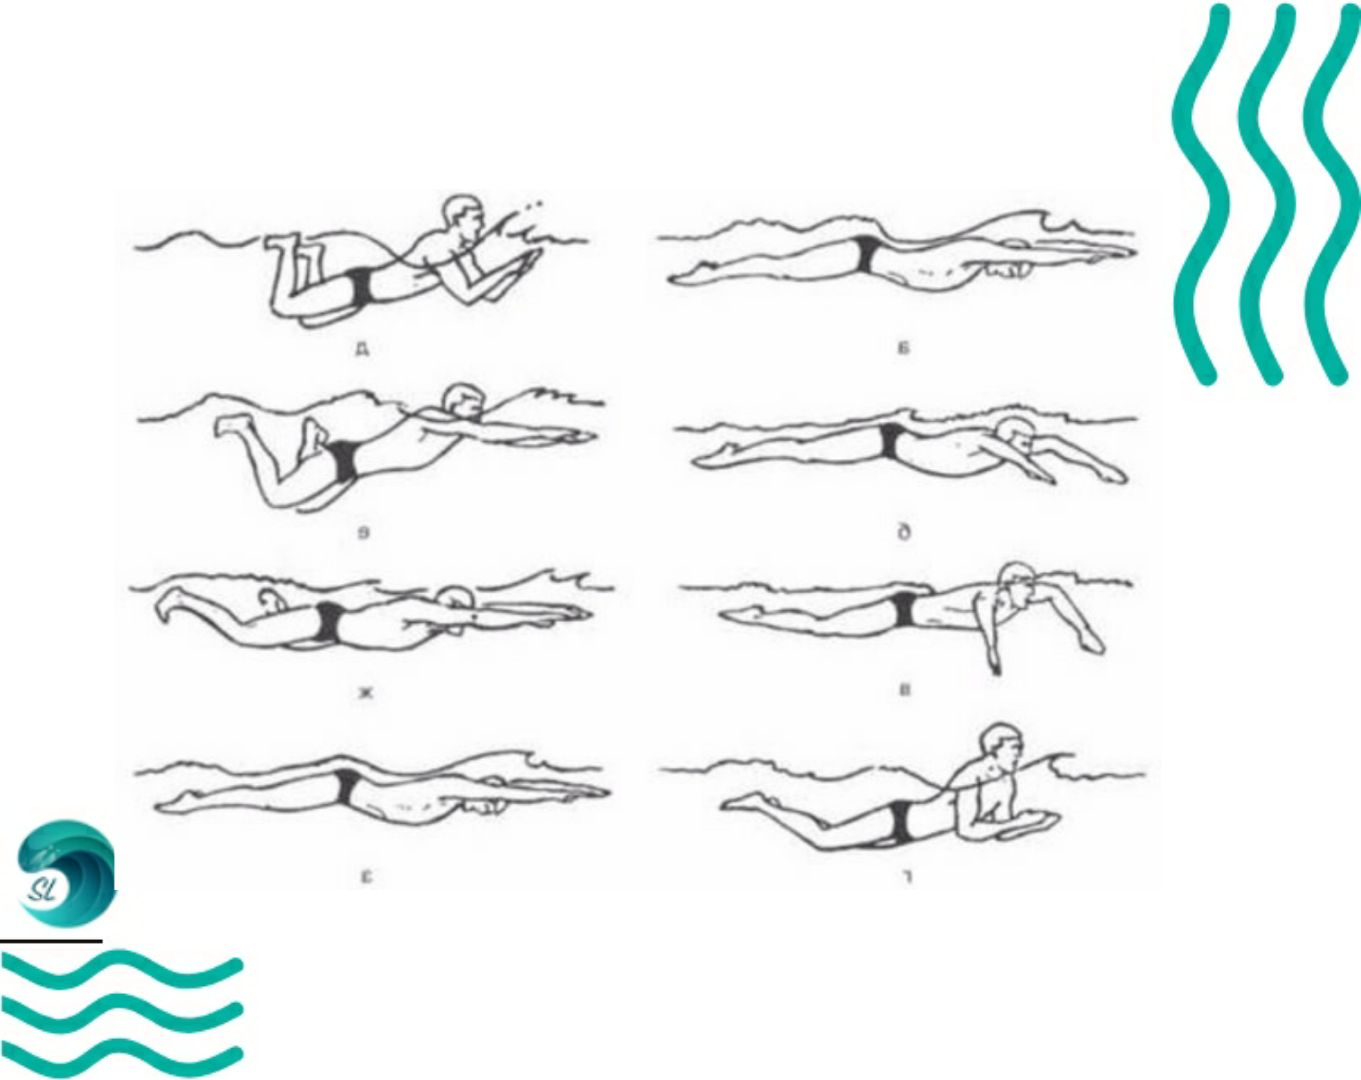 Как научиться быстро и правильно плавать брассом: первые шаги, техника в бассейне, как дышать